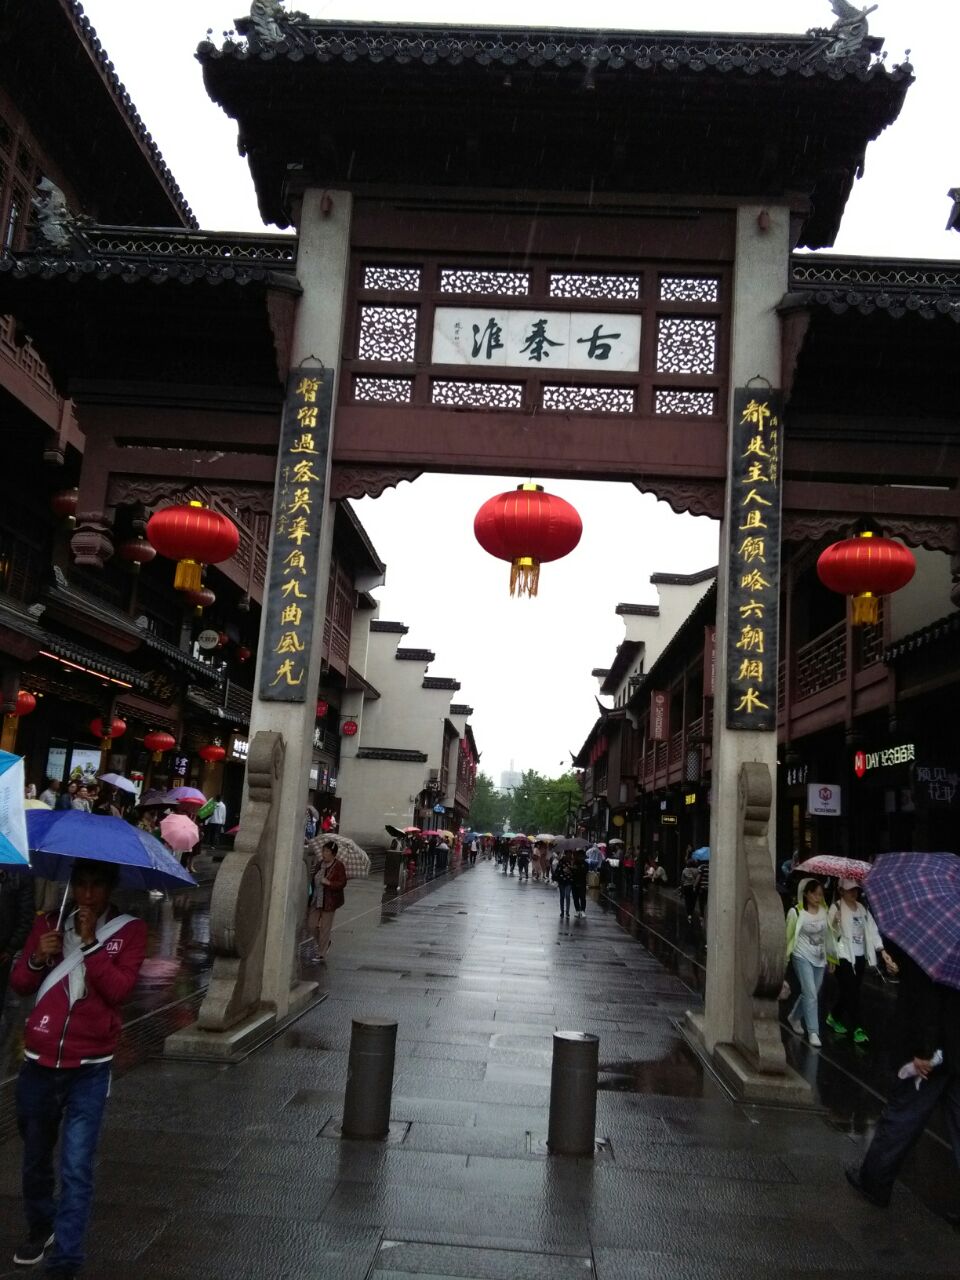 夫子庙是南京著名景点,夫子庙十贡院十瞻园十秦淮风光十小吃世界,值得